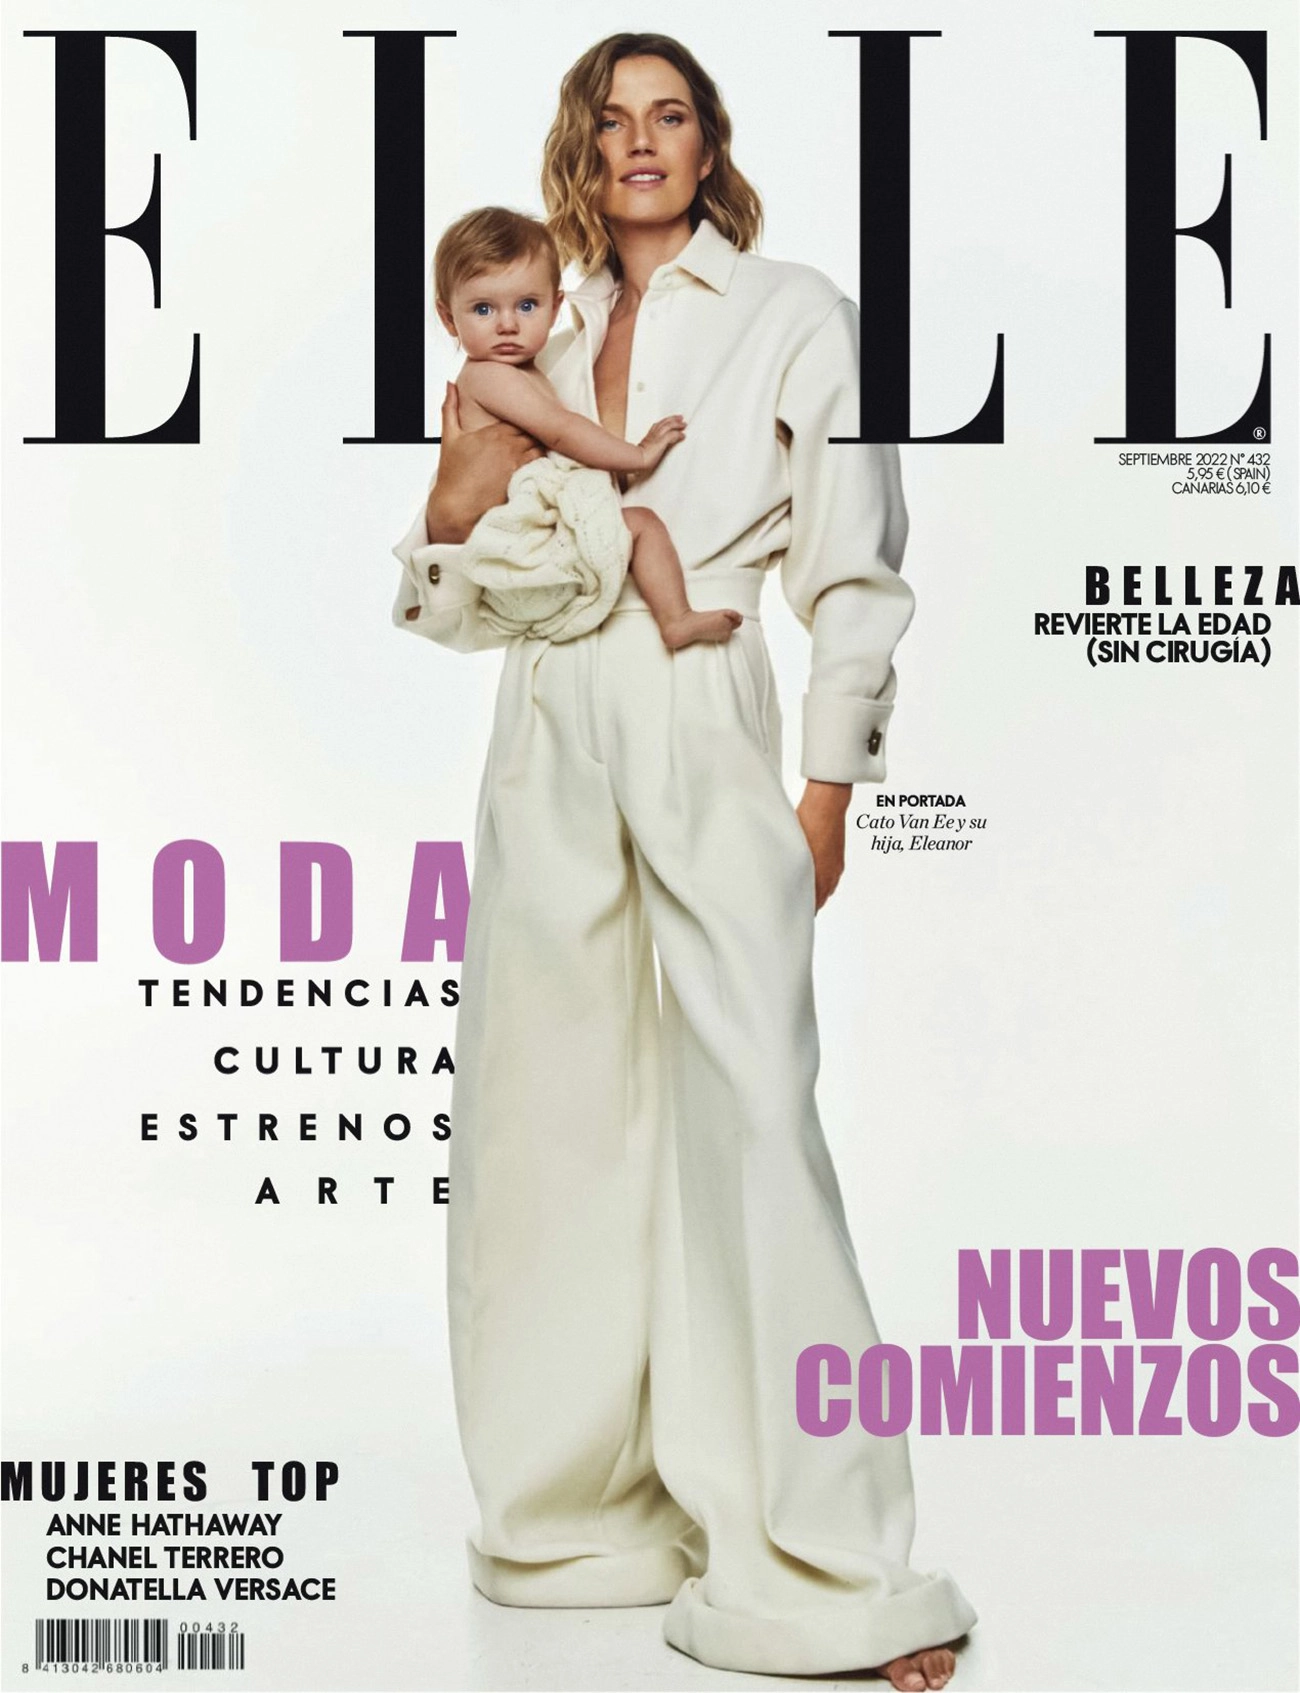 Cato van Ee covers Elle Spain September 2022 by Mario Sierra